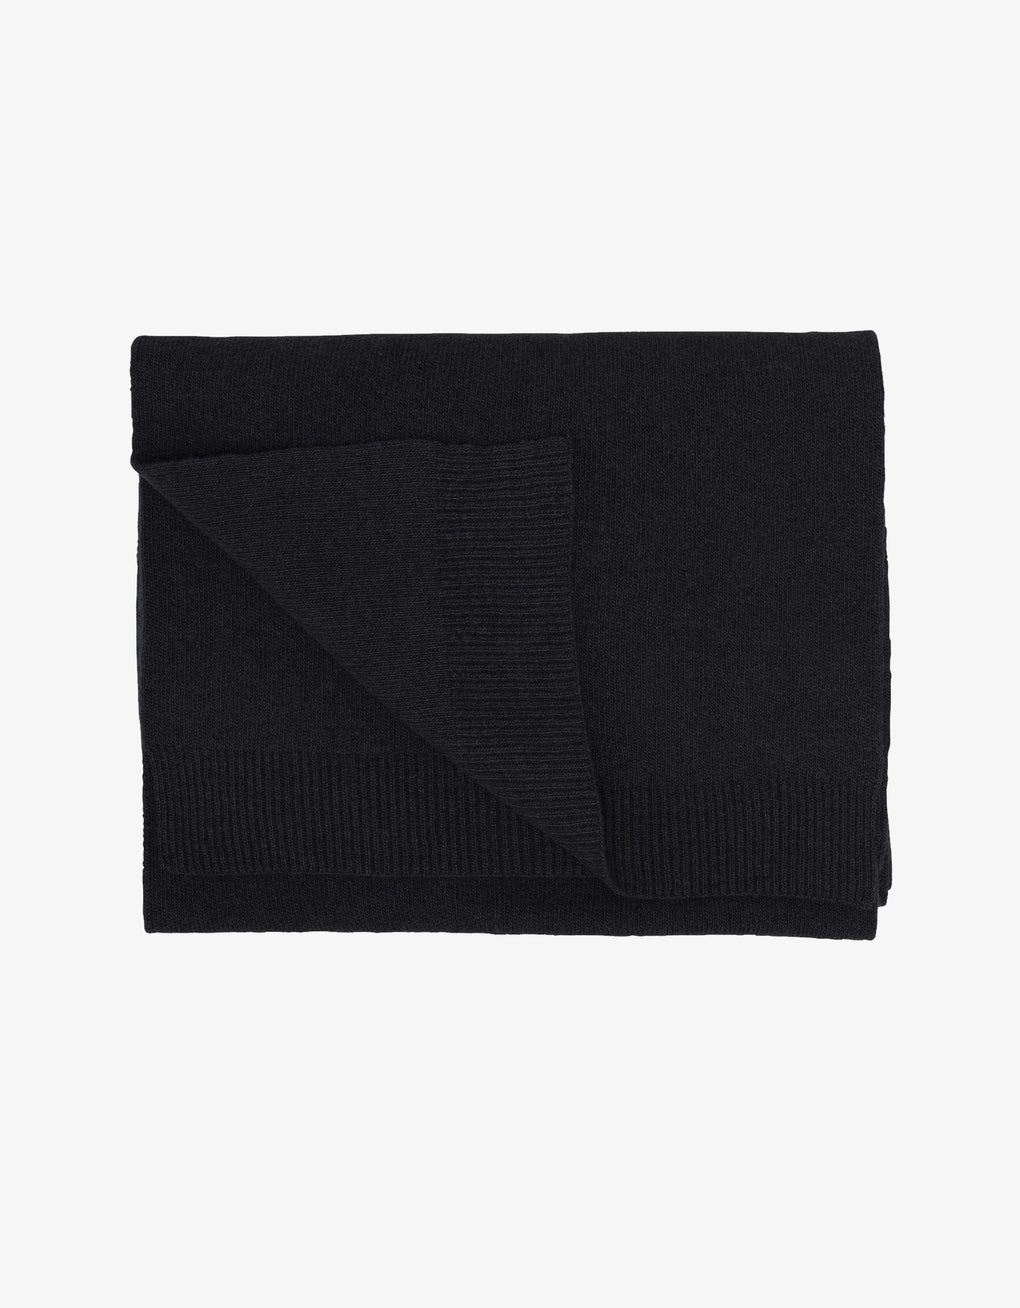 Merino wool scarf in deep black